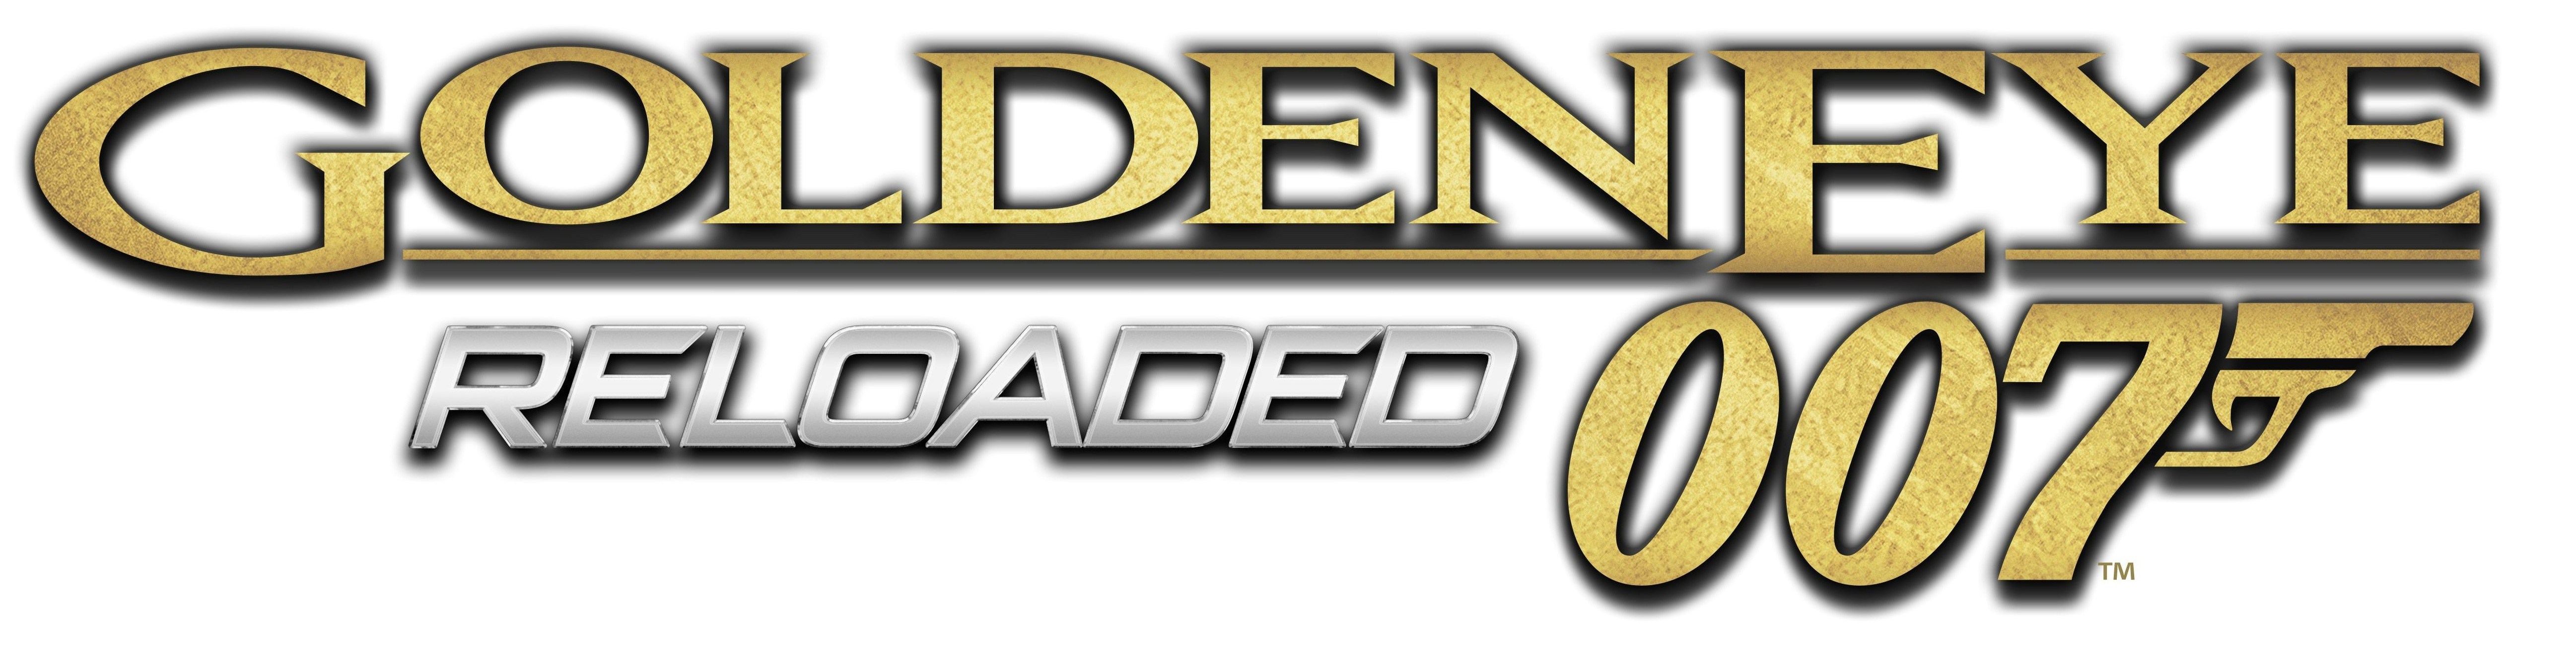 Goldeneye 007: Reloaded Main Menu Mod